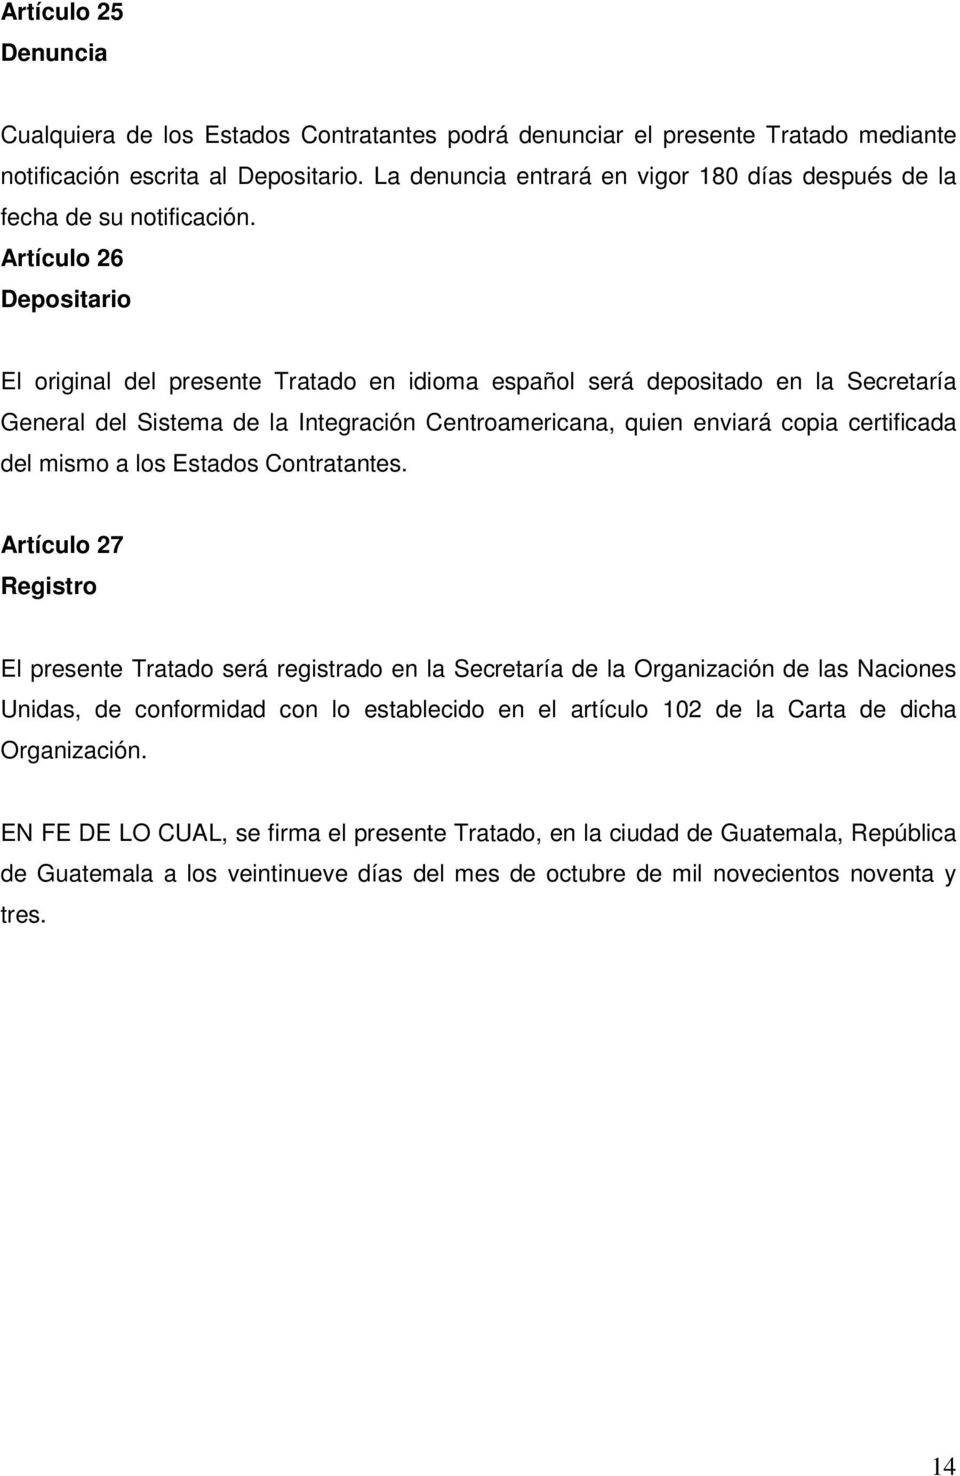 Artículo 26 Depositario El original del presente Tratado en idioma español será depositado en la Secretaría General del Sistema de la Integración Centroamericana, quien enviará copia certificada del